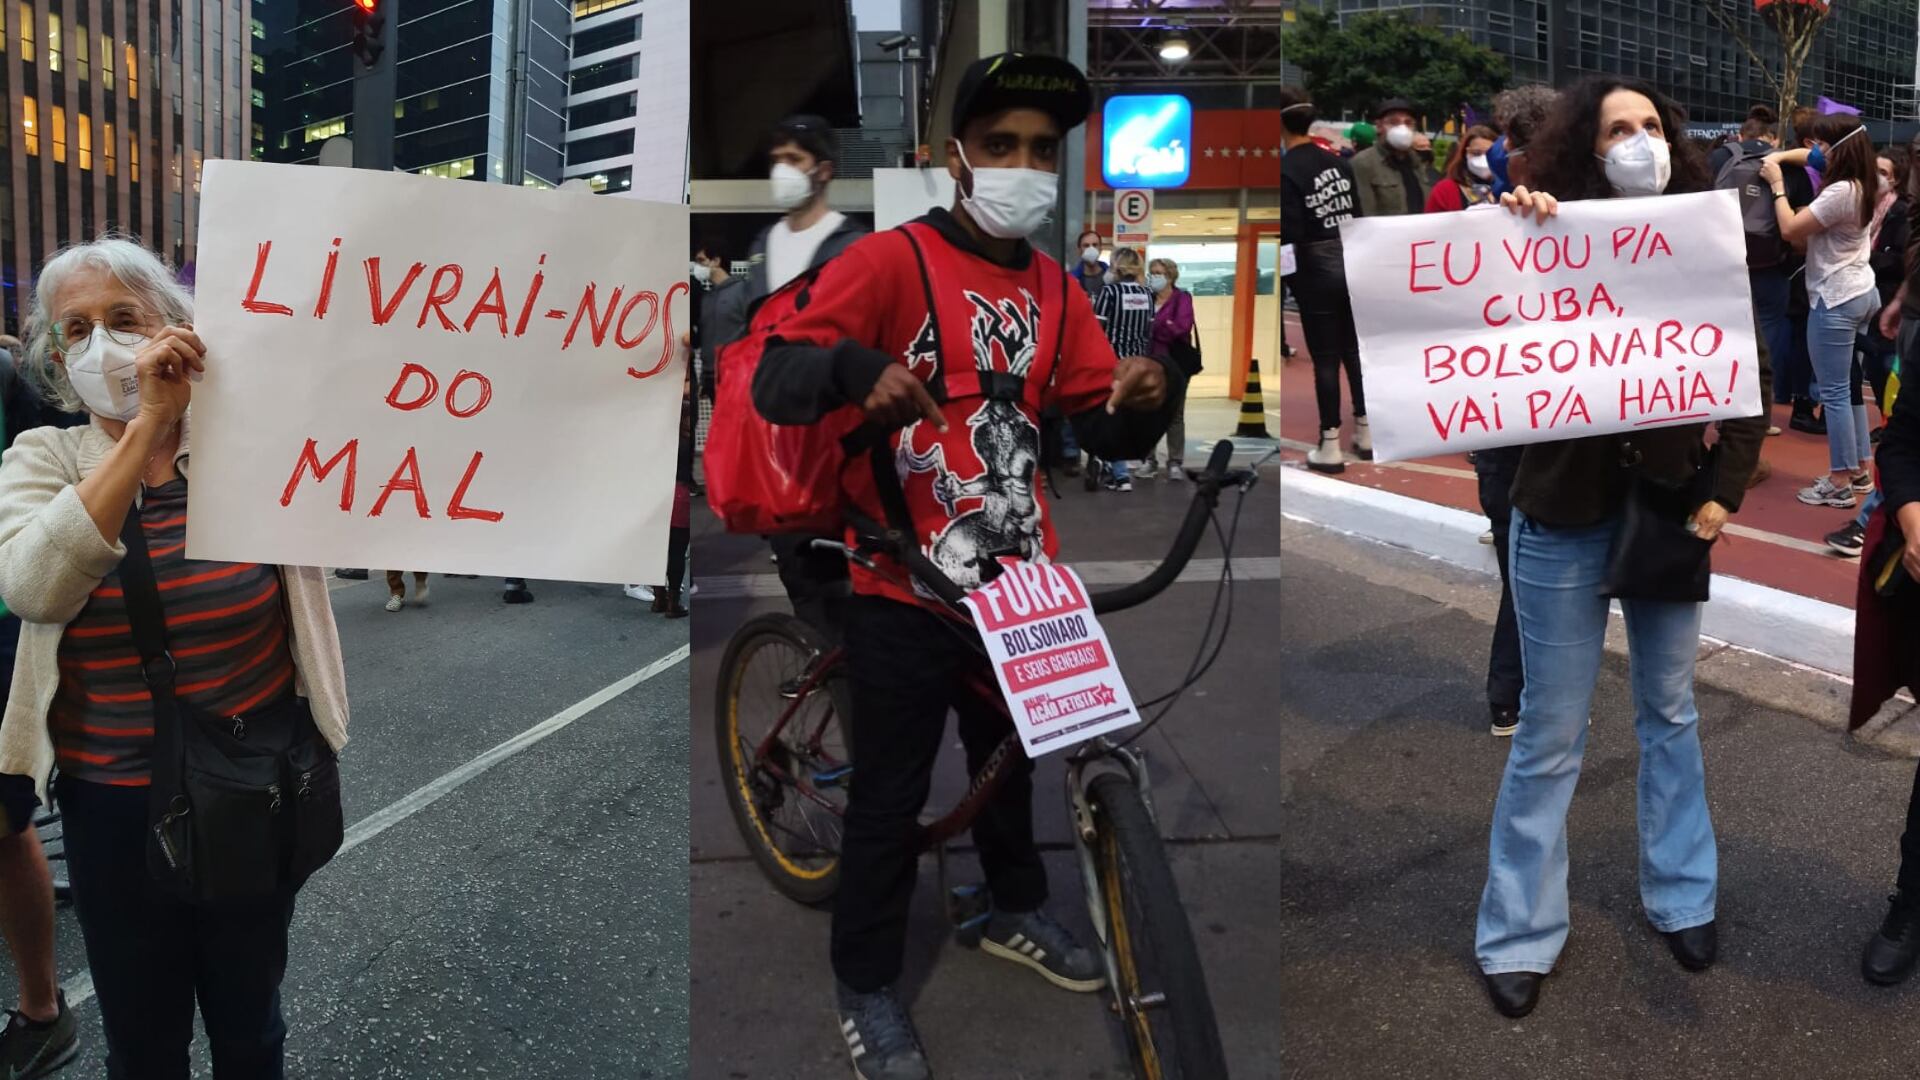 Protesto chegou a ocupar nove quadras na avenida mais famosa de São Paulo.